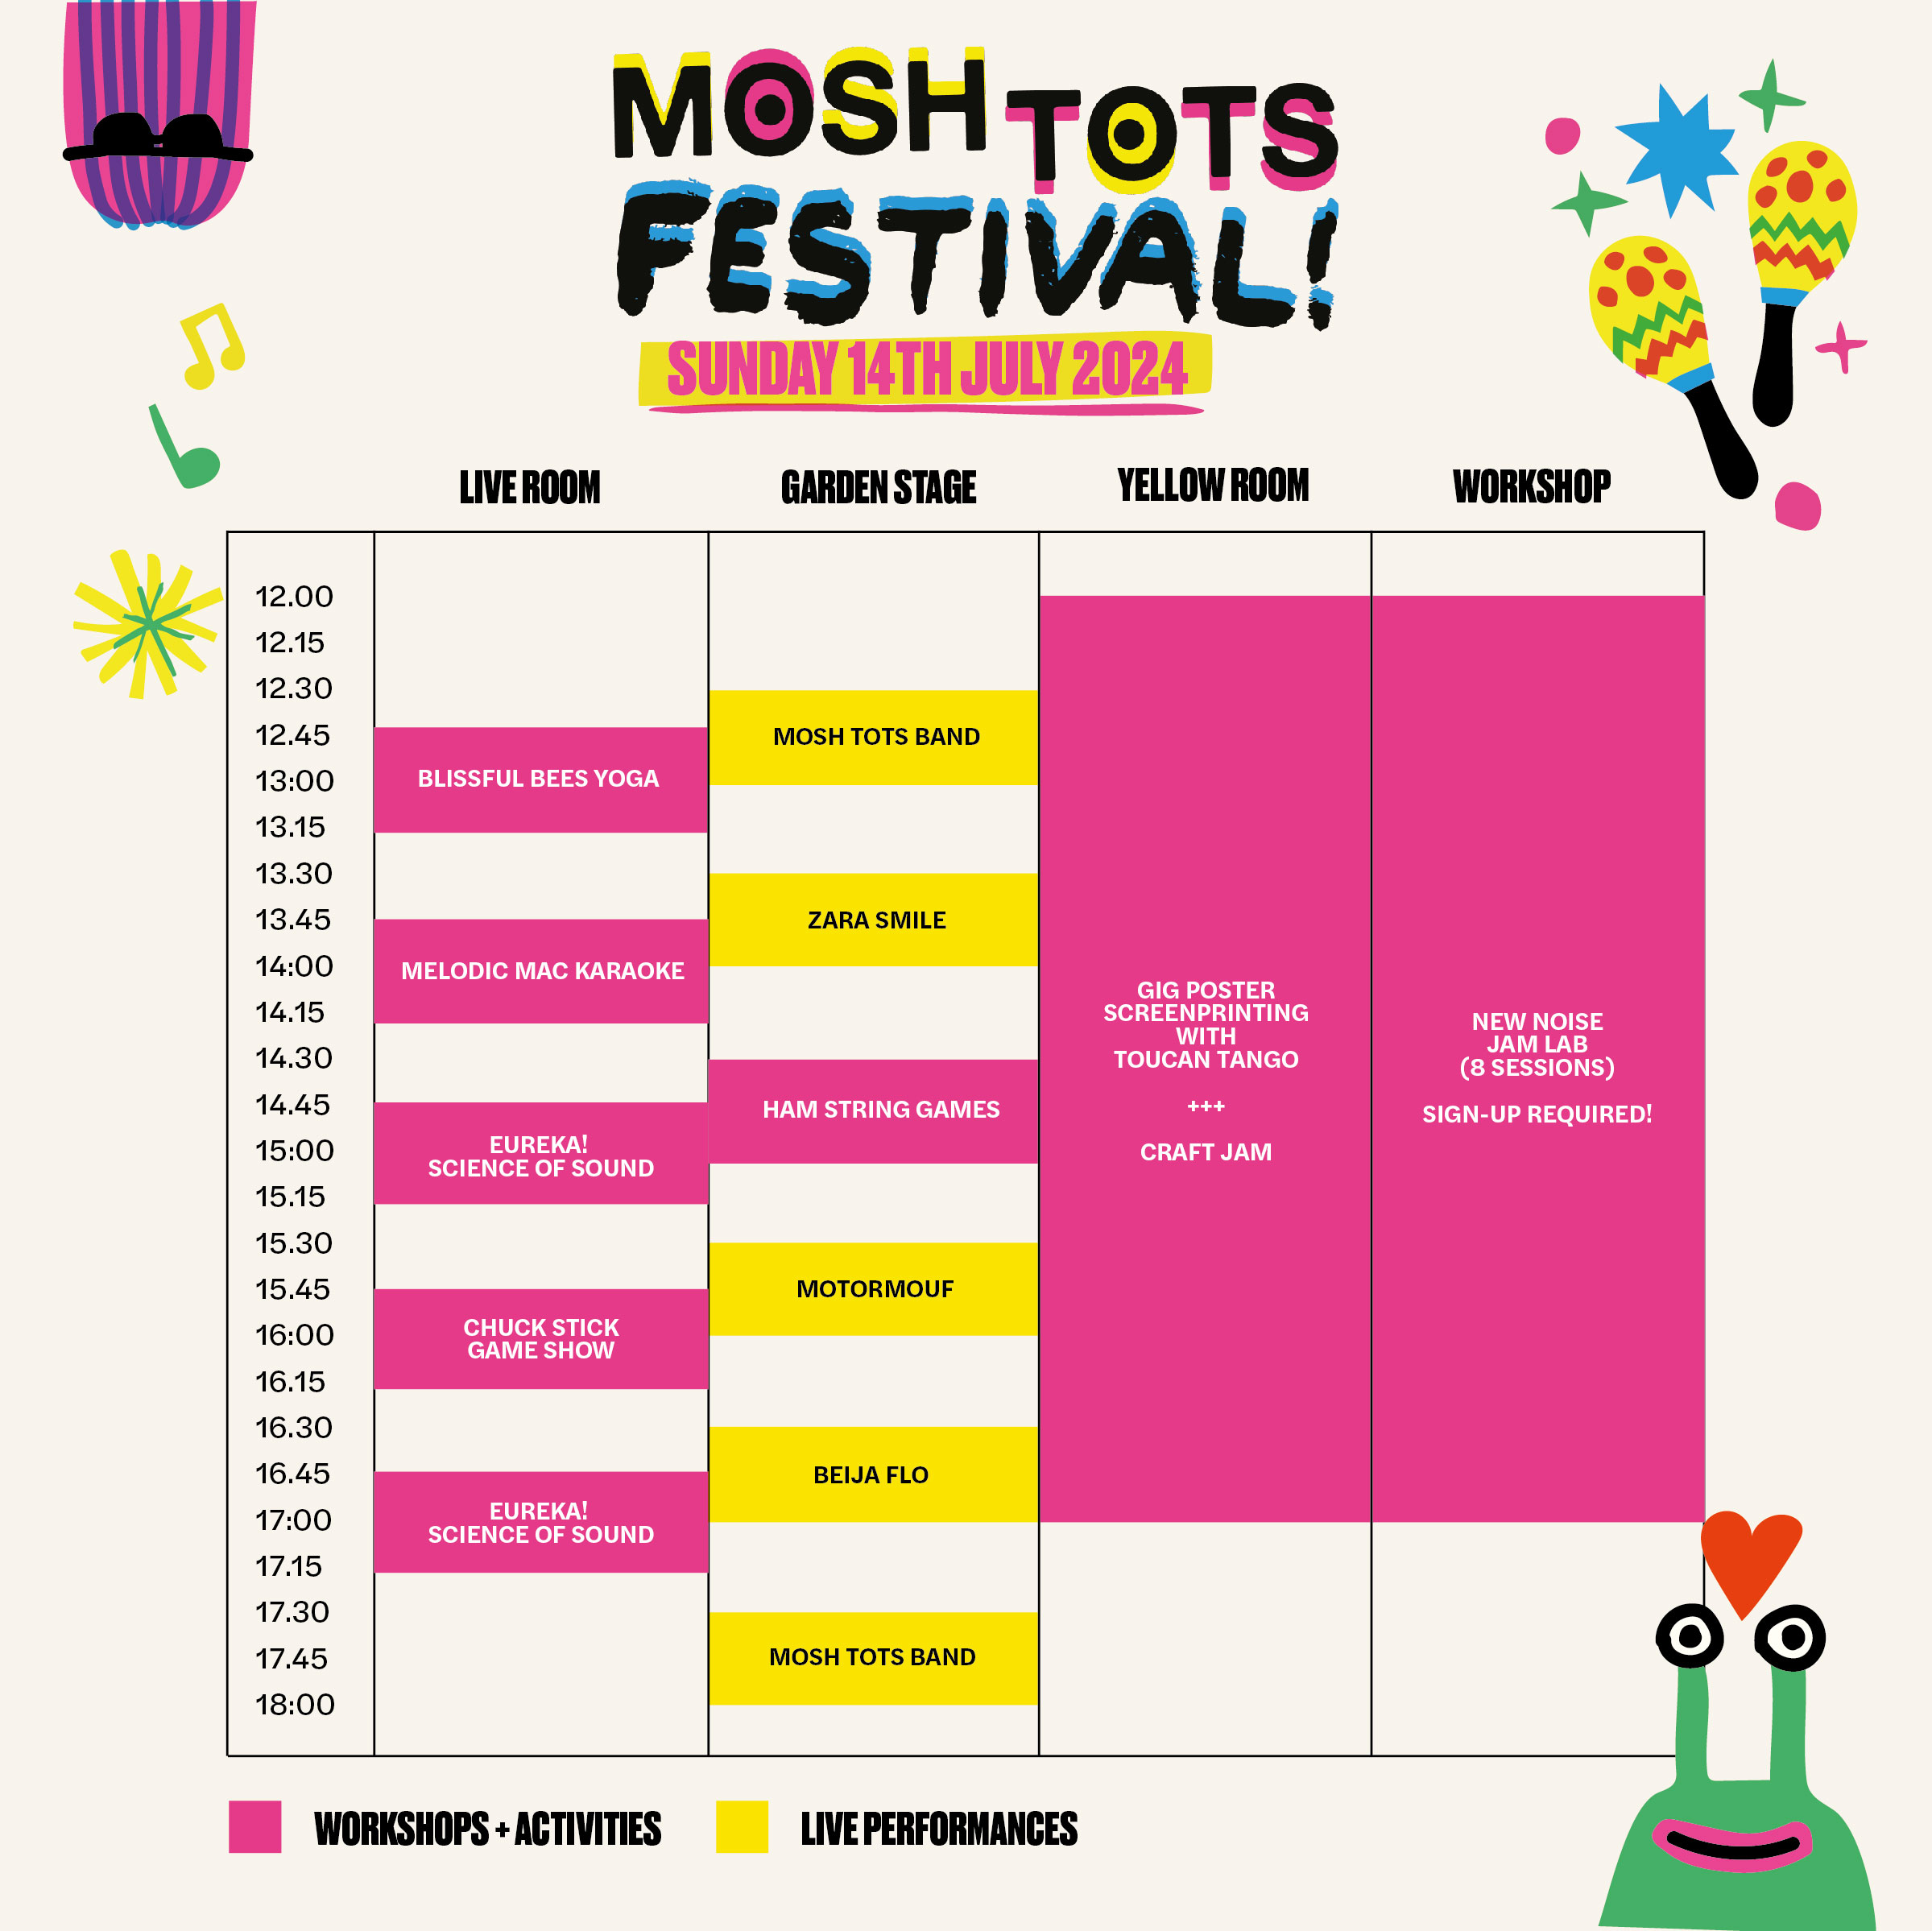 MOSH TOTS FESTIVAL